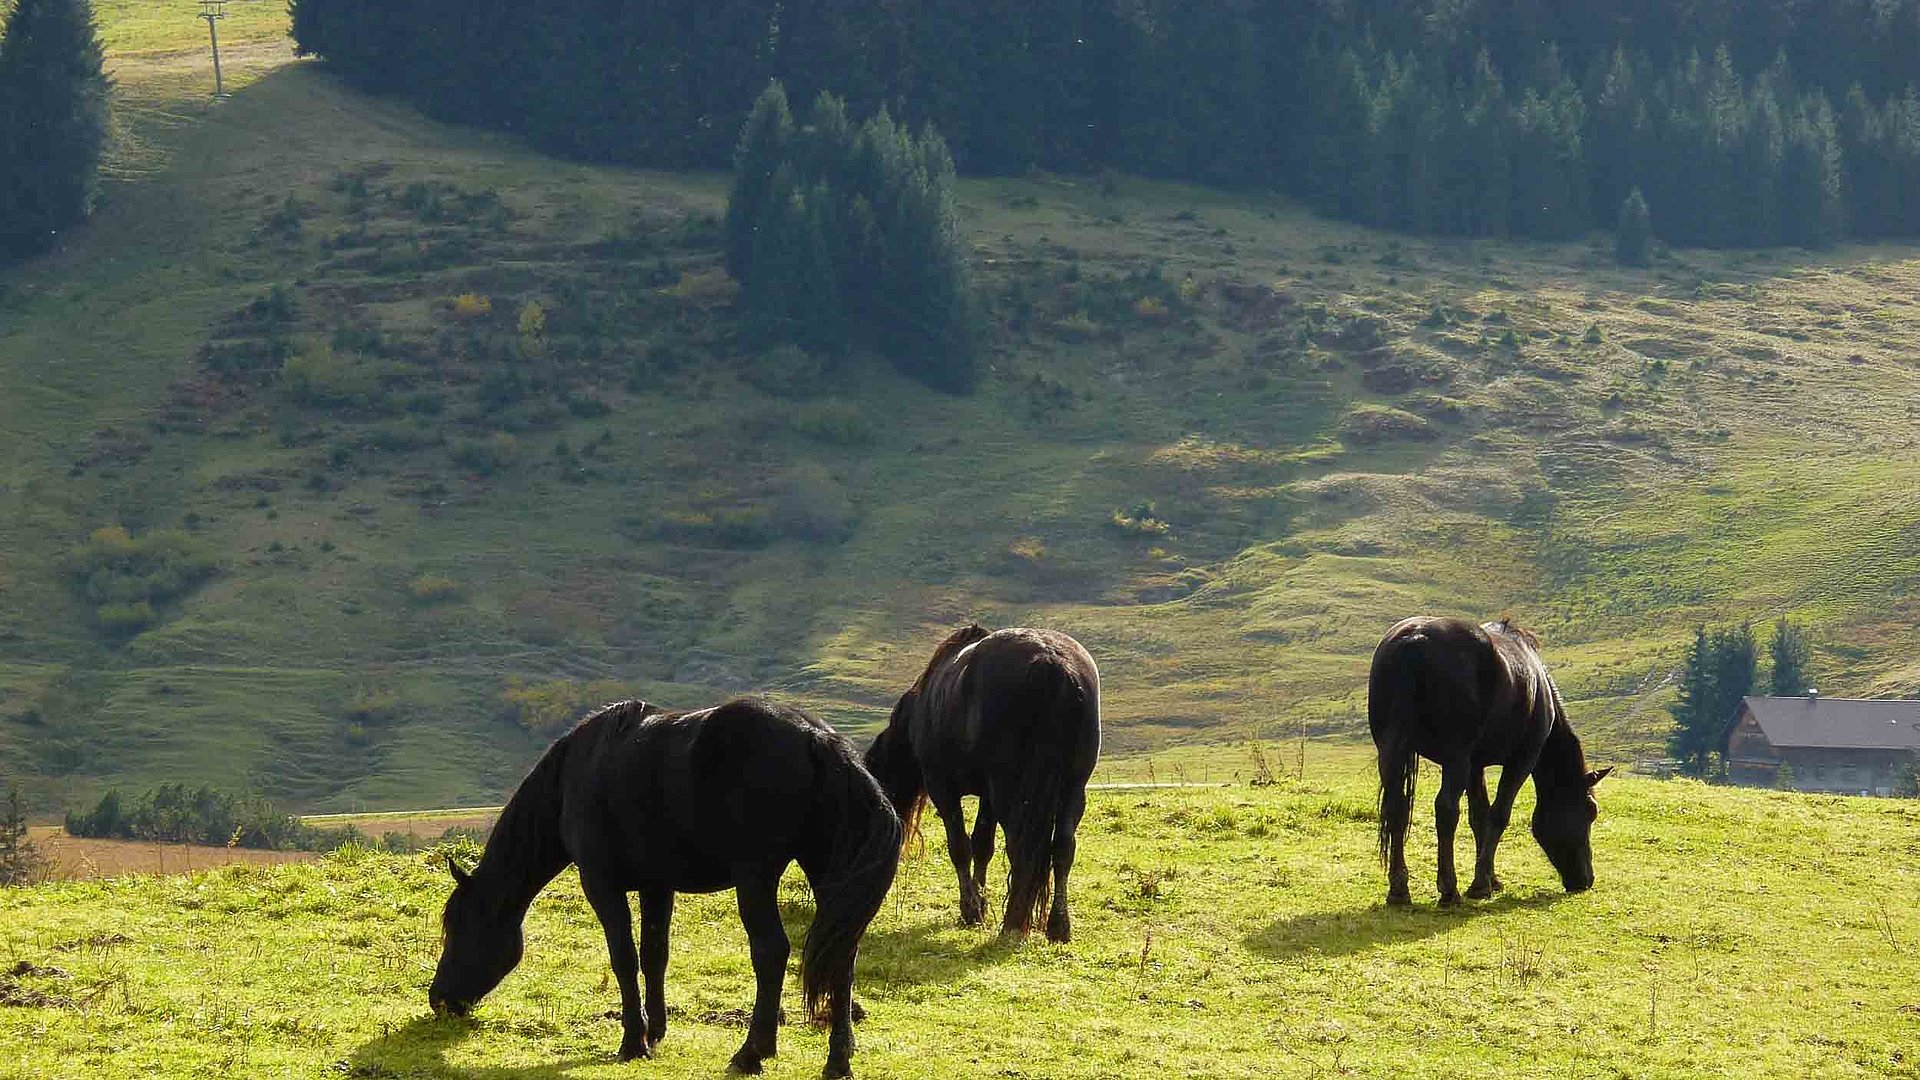 Urlaub auf dem Bauernhof - drei Pferde mit dunklen Fell grasen in sehr grüner Landschaft, im Hintergrund ist ein Haus und ein Wald zu sehen